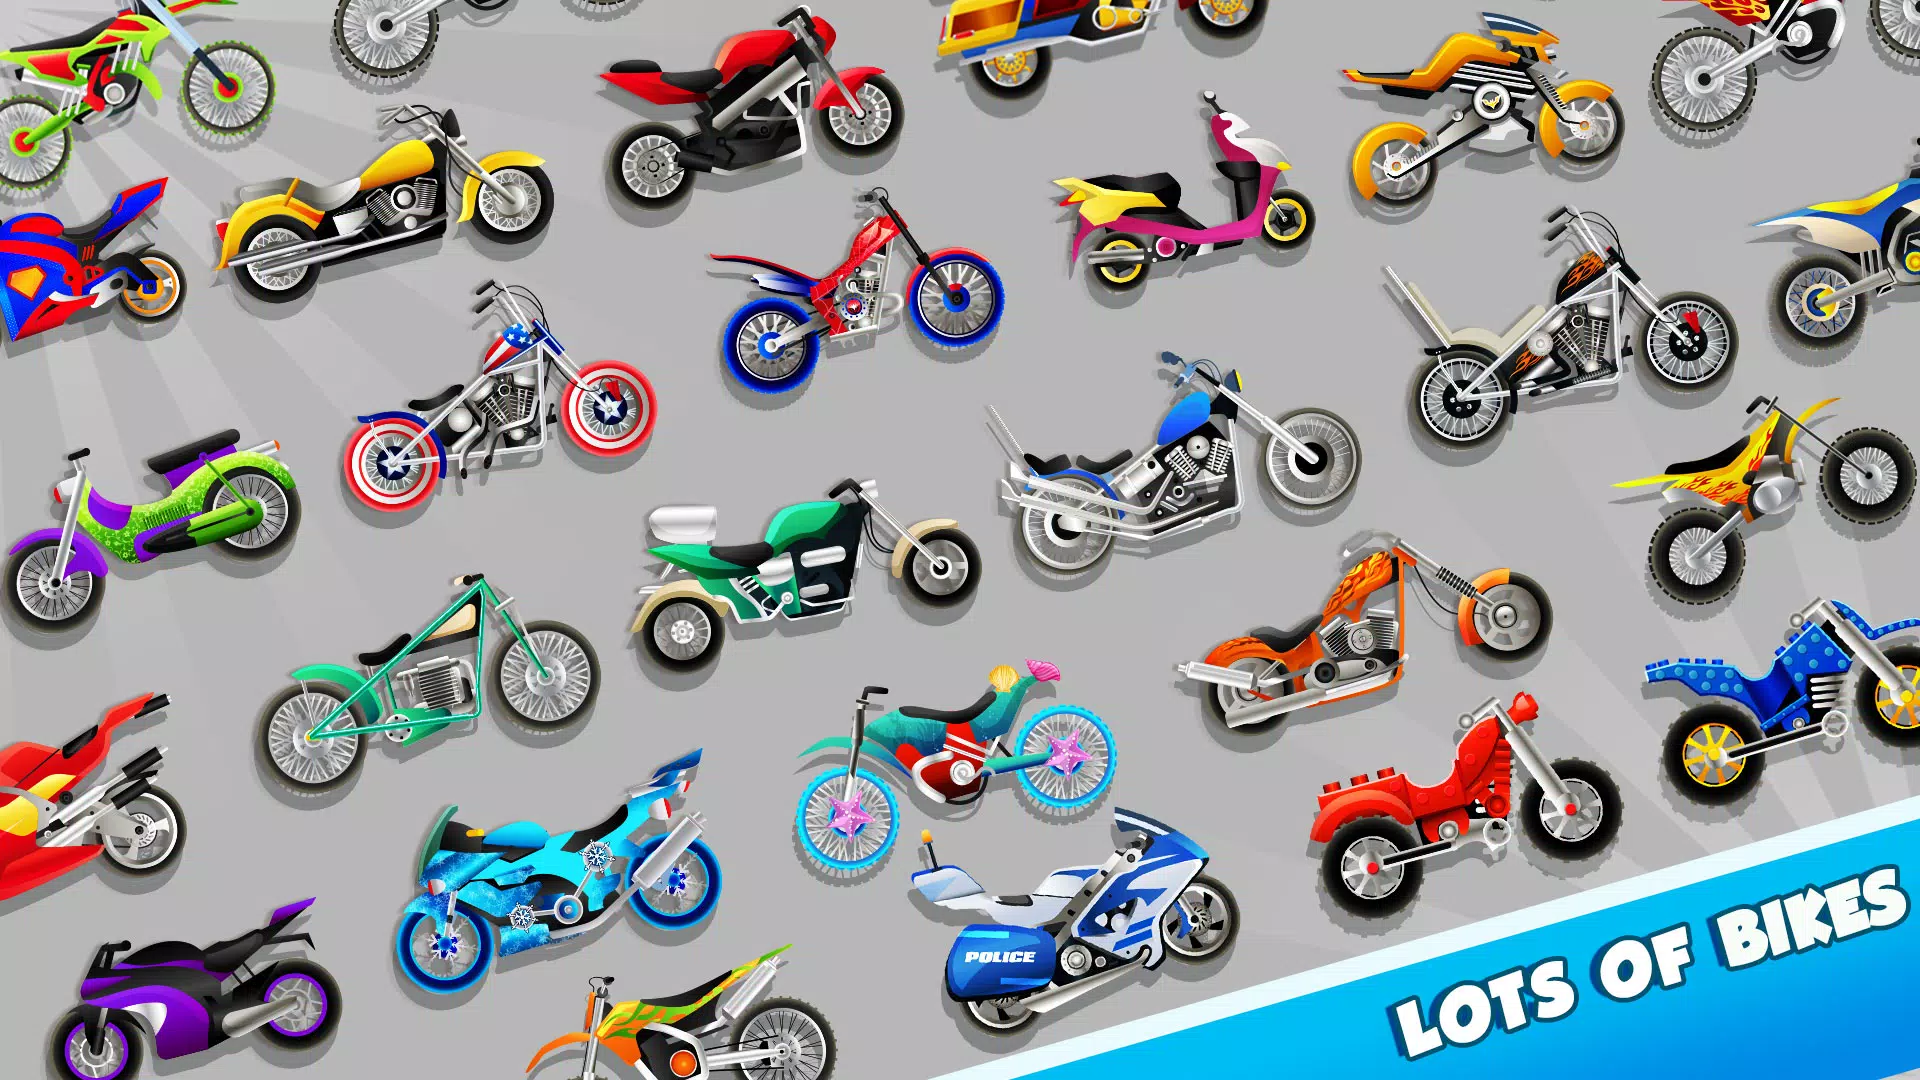 Jogo de Moto (Corrida de Motos) Jogos de Android para Crianças 